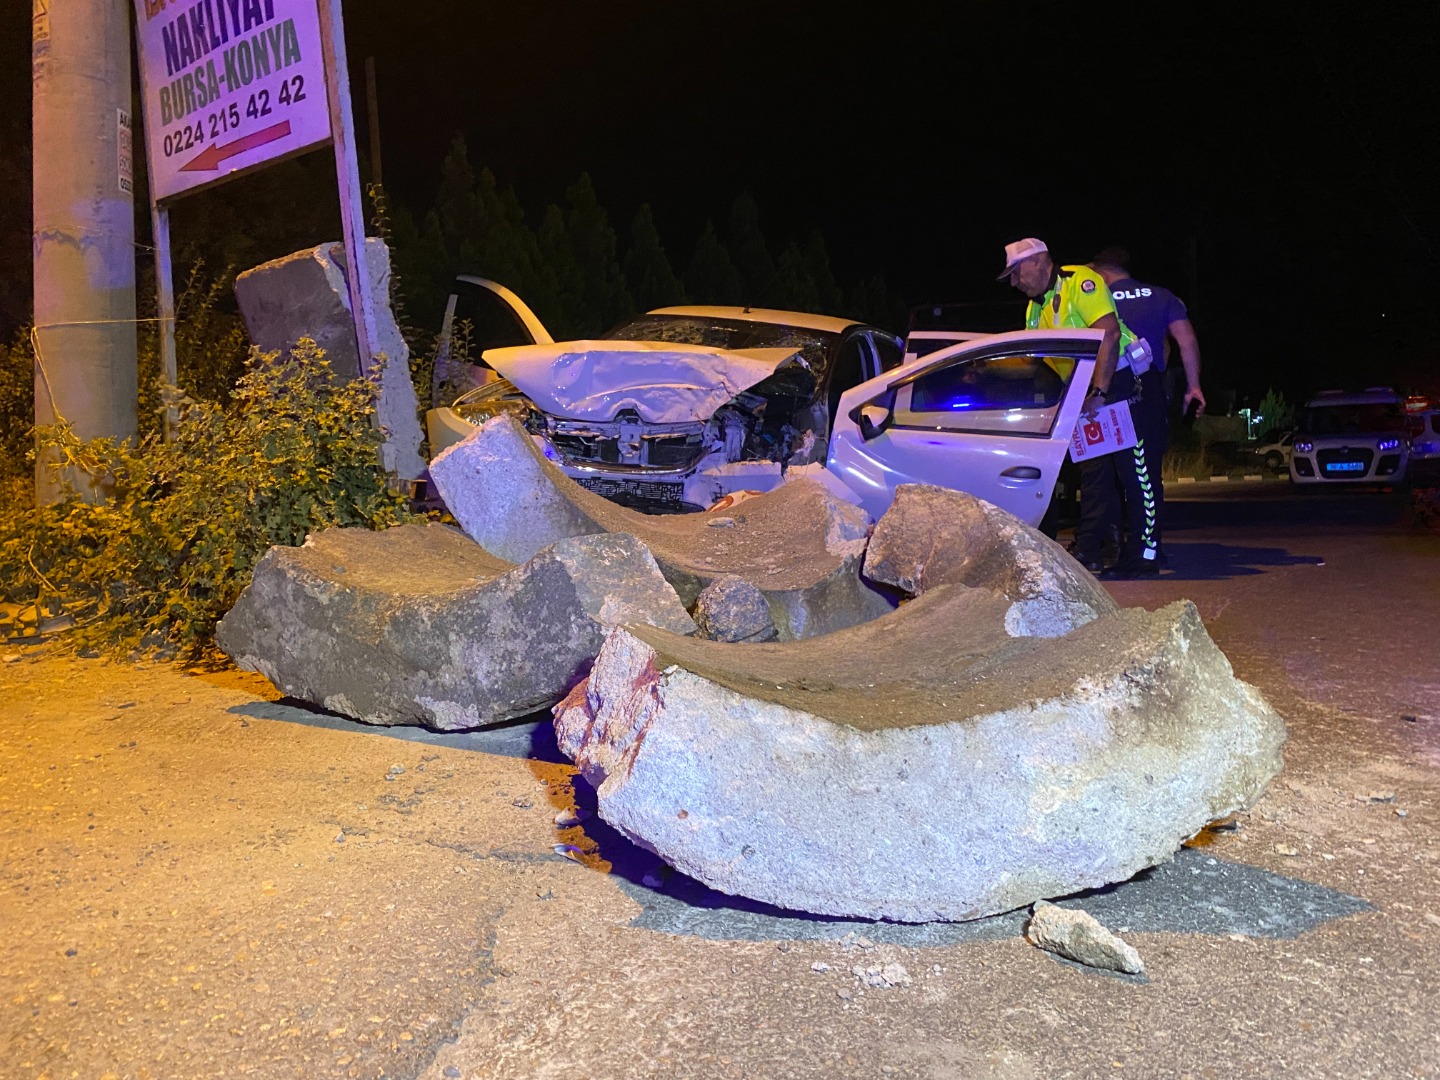 Bursa'da feci kaza: 1 ölü 2 ağır yaralı